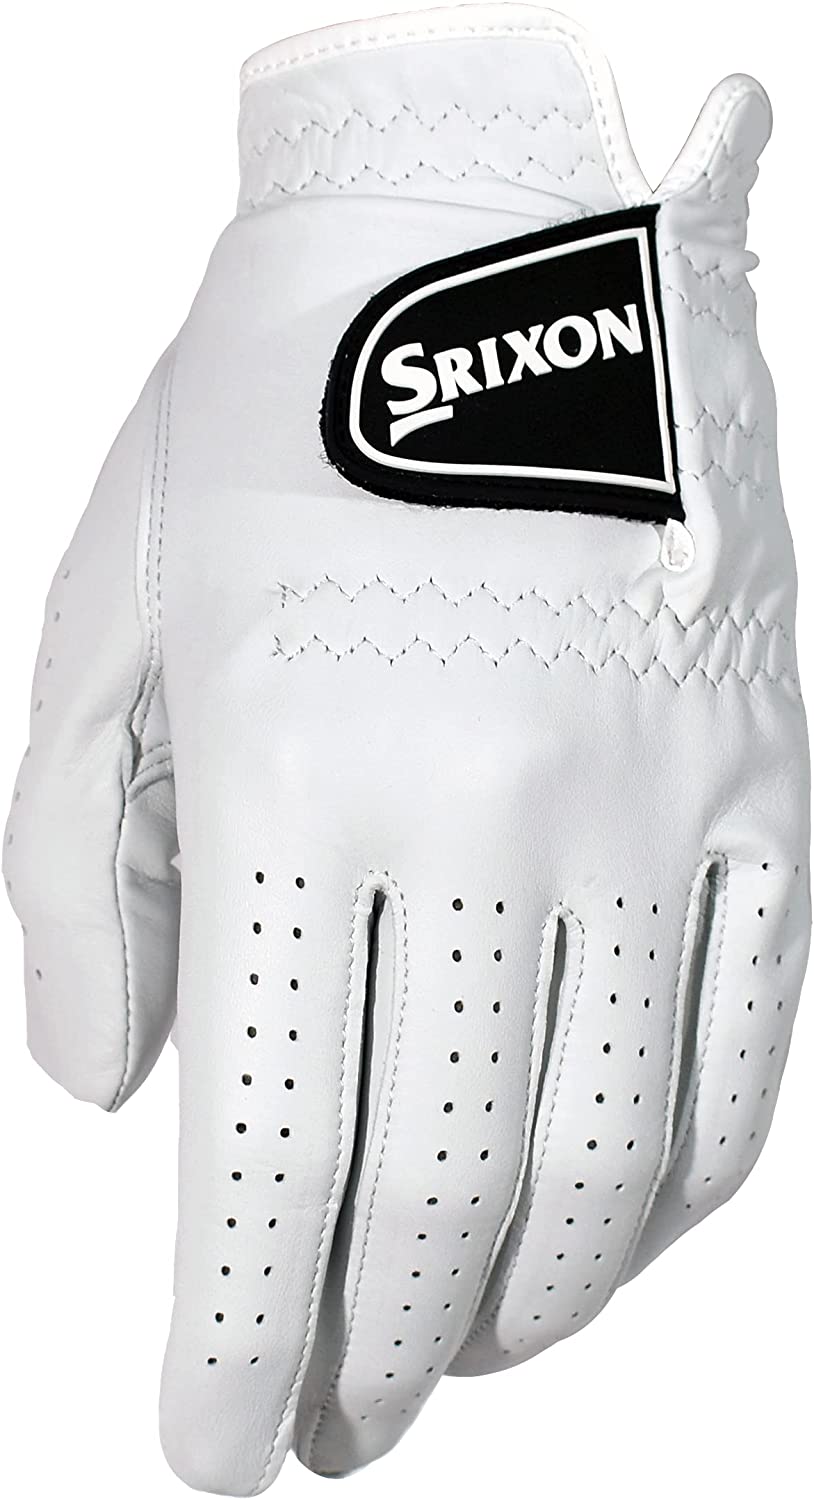 Srixon Men's Premium 100% Cabretta Leather Golf Glove